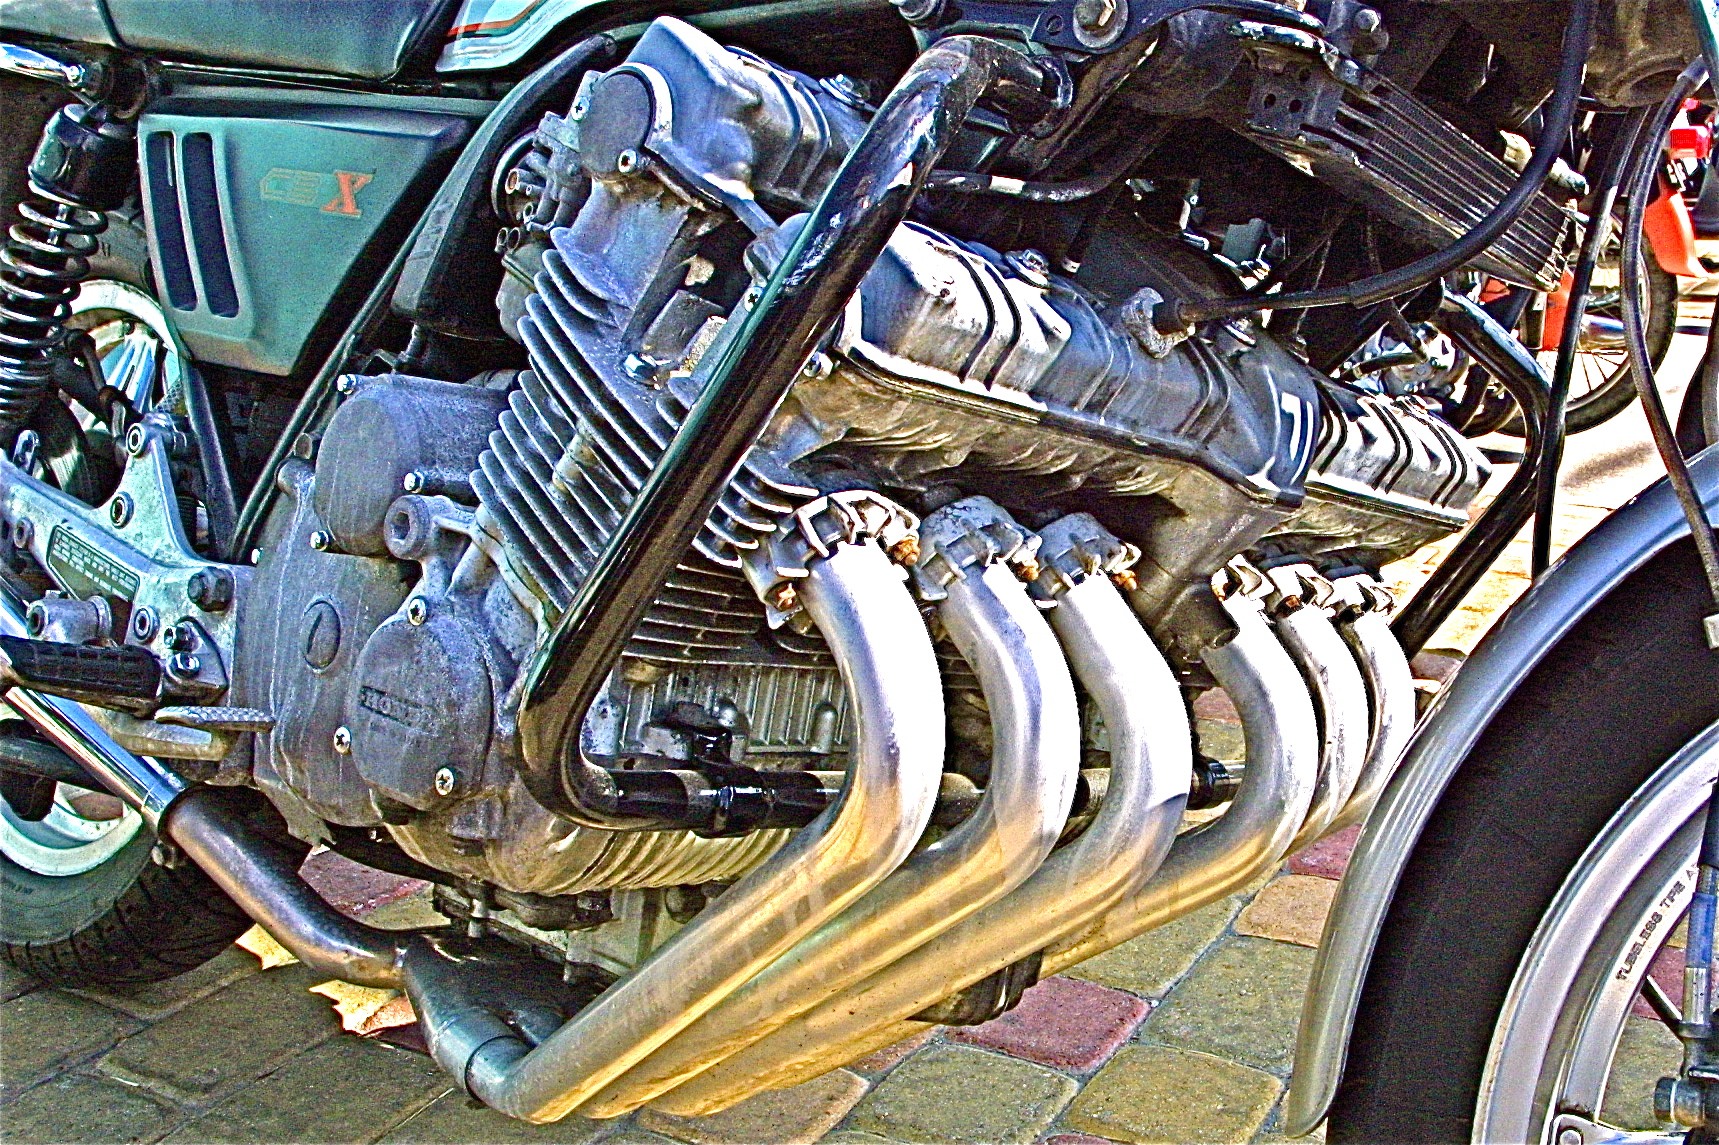 1979 Honda CBX 1000 at Horsepower Farm engine